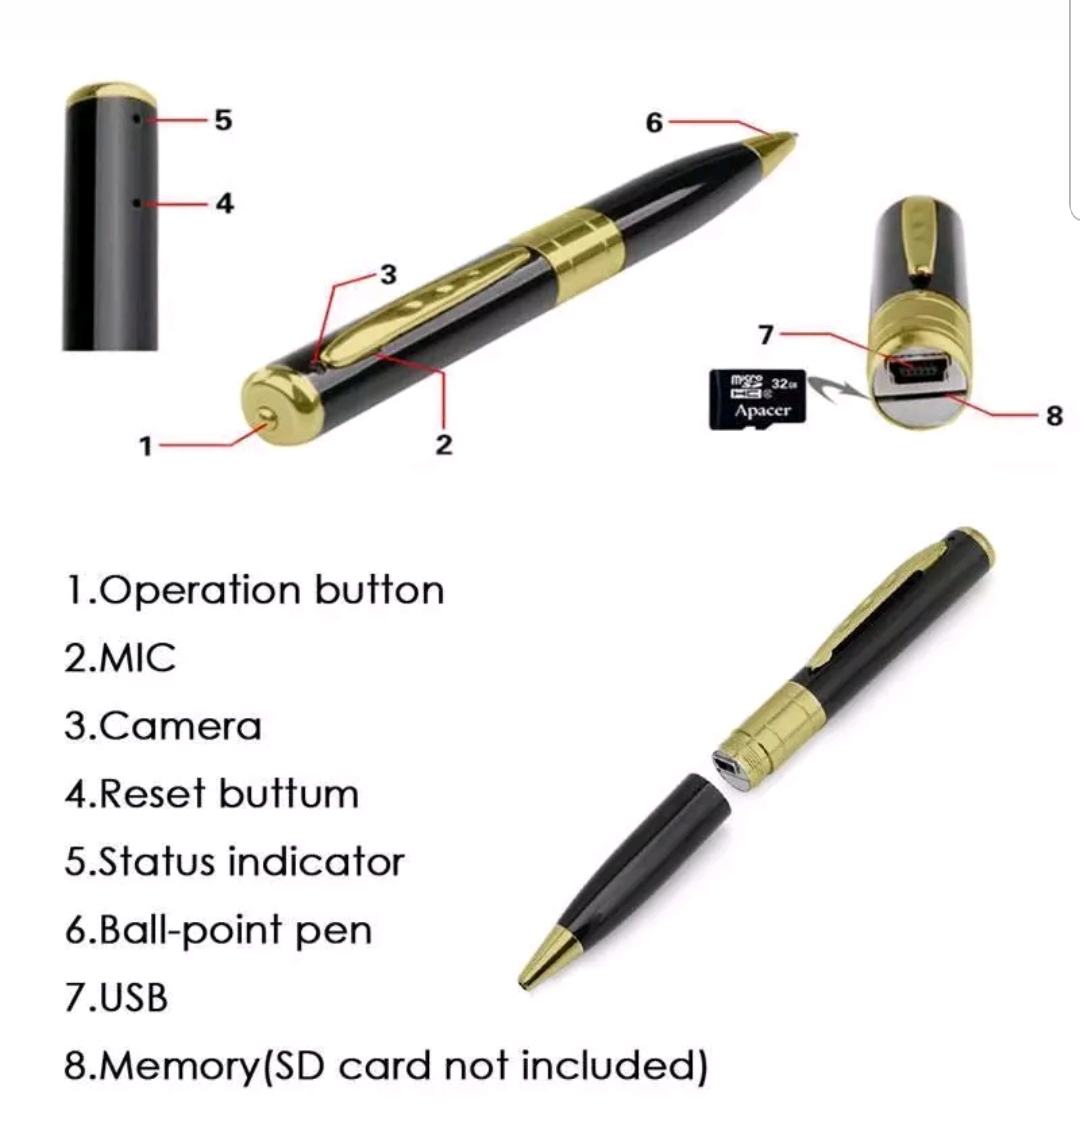  видеозапись c функцией шариковая ручка предотвращение преступления товары Spy авторучка 